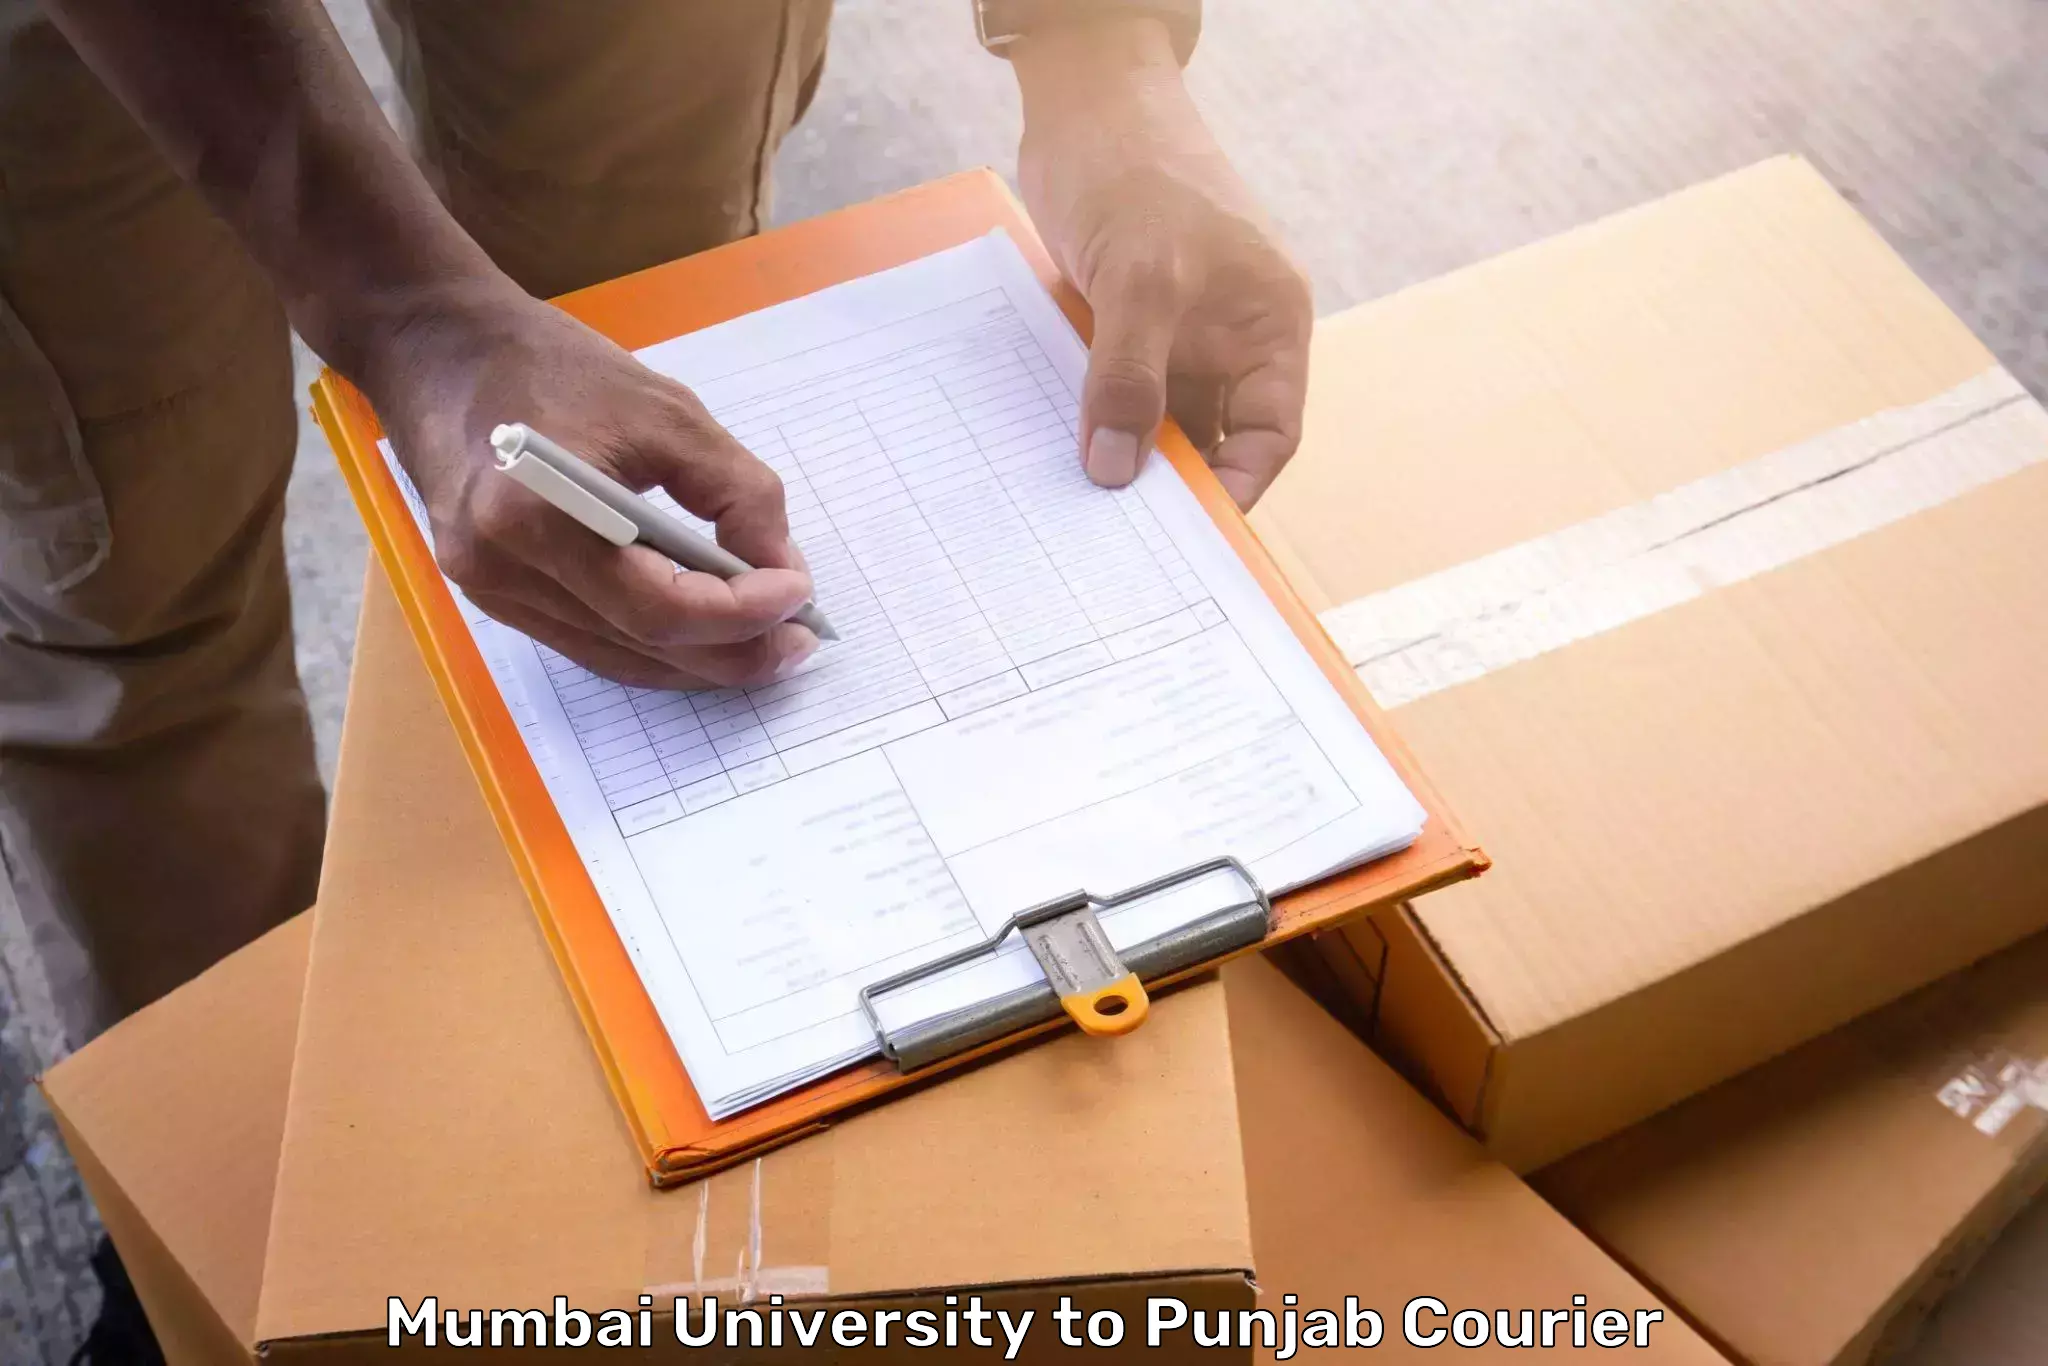 Luggage forwarding service Mumbai University to Amritsar